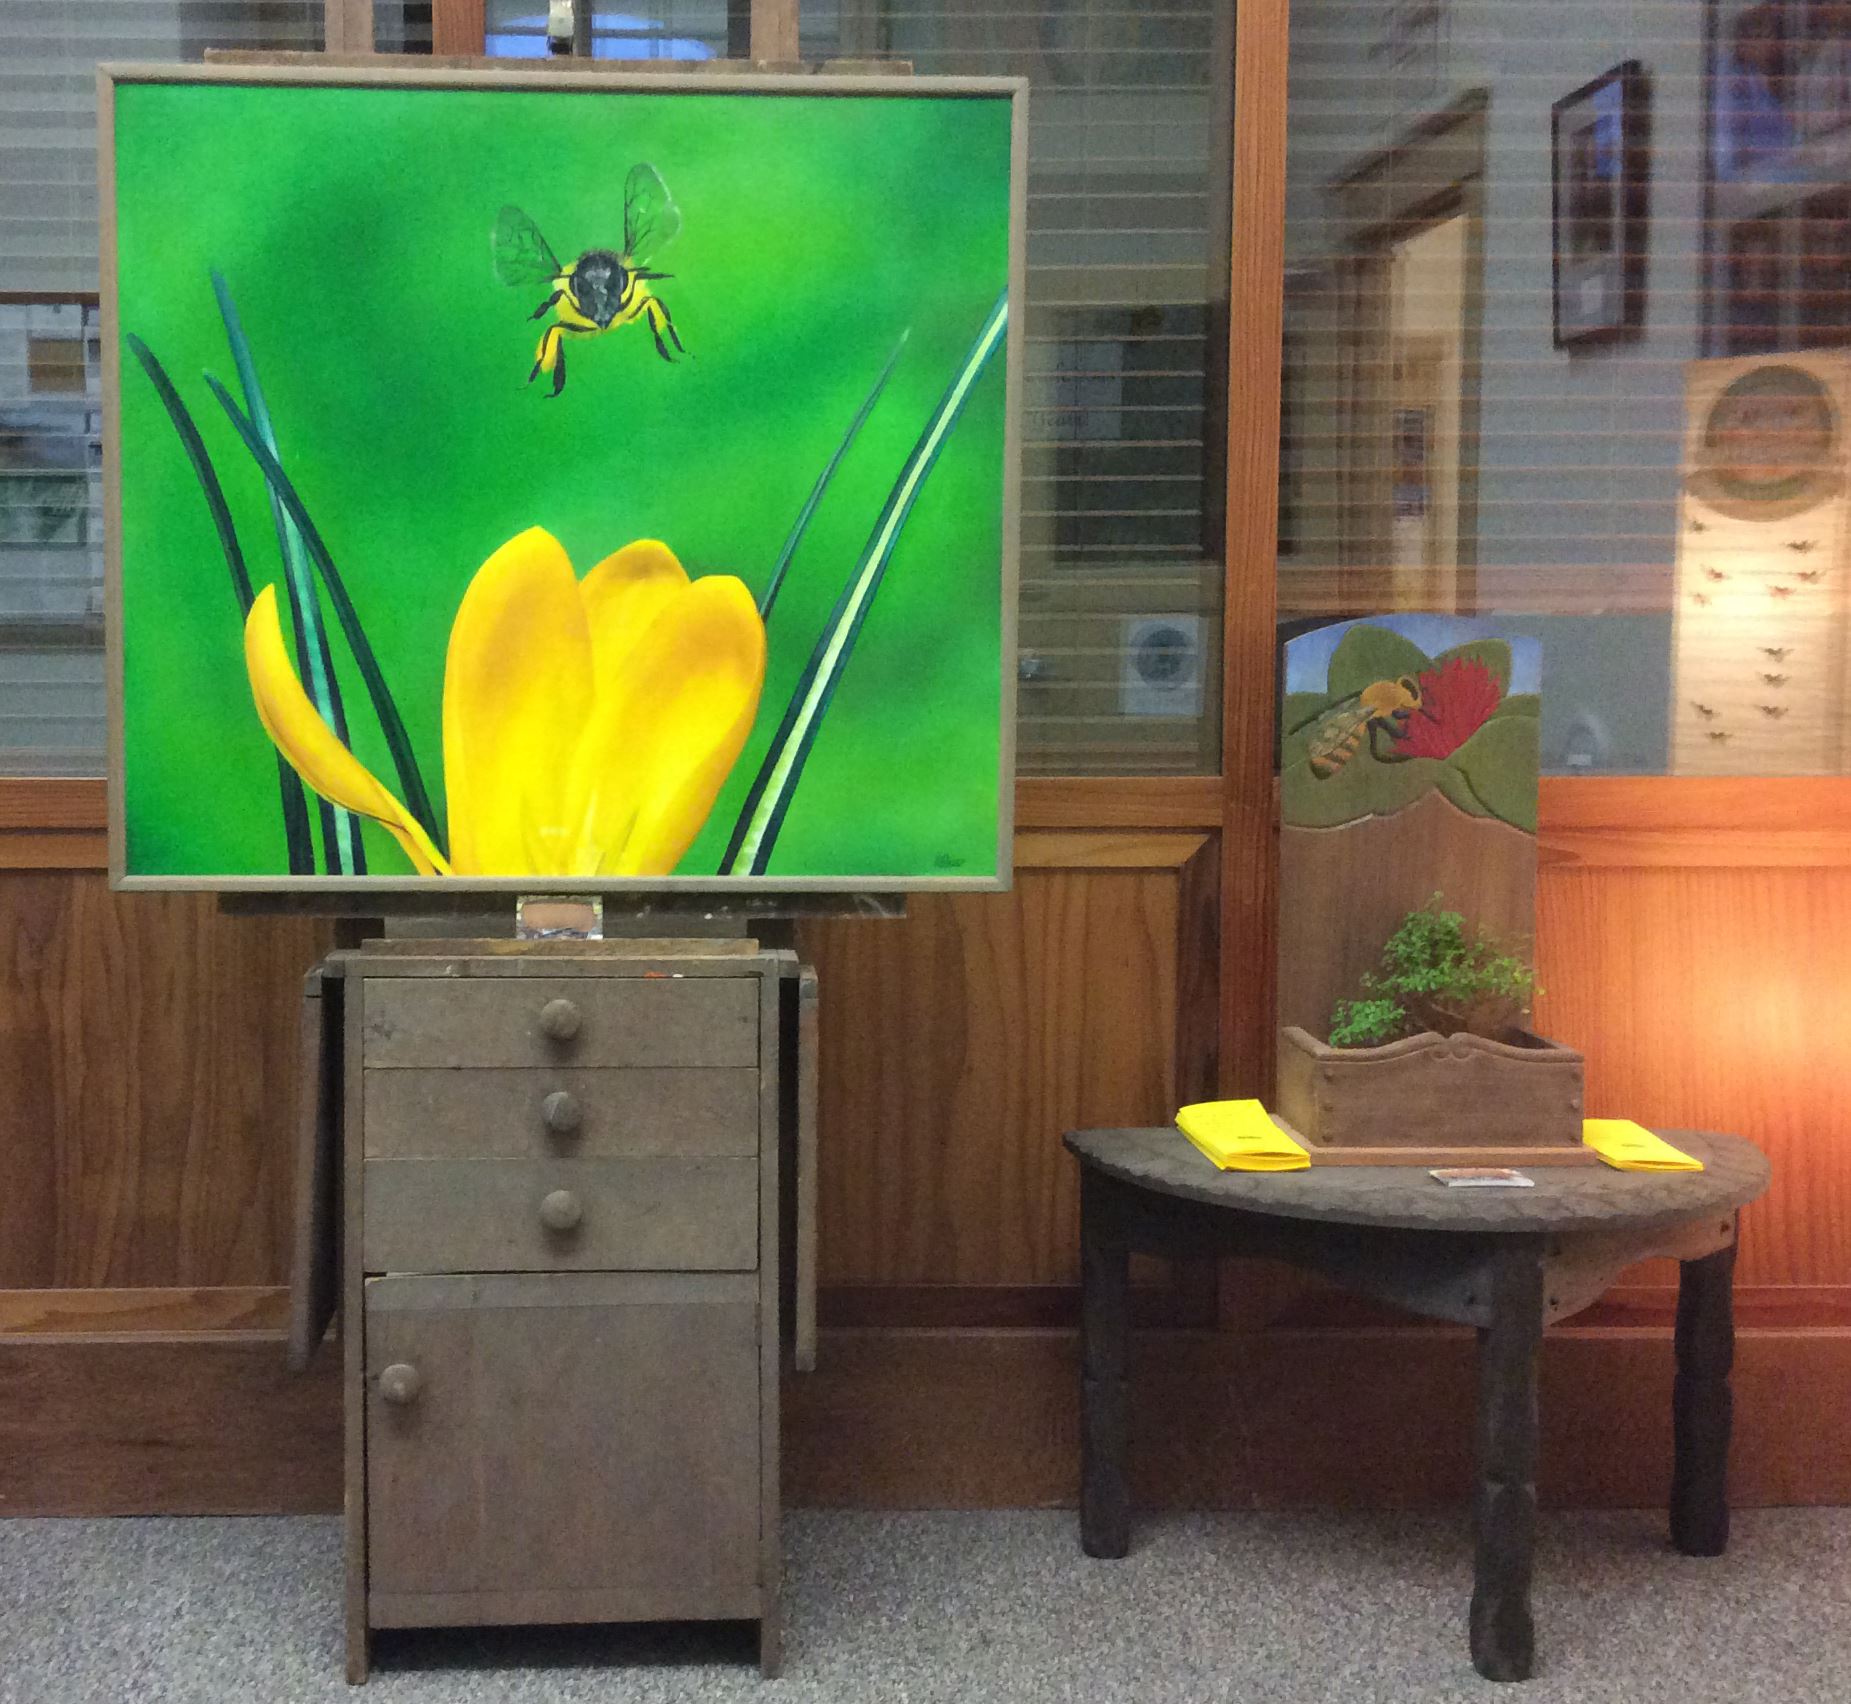 Bee Art Display at City Hall